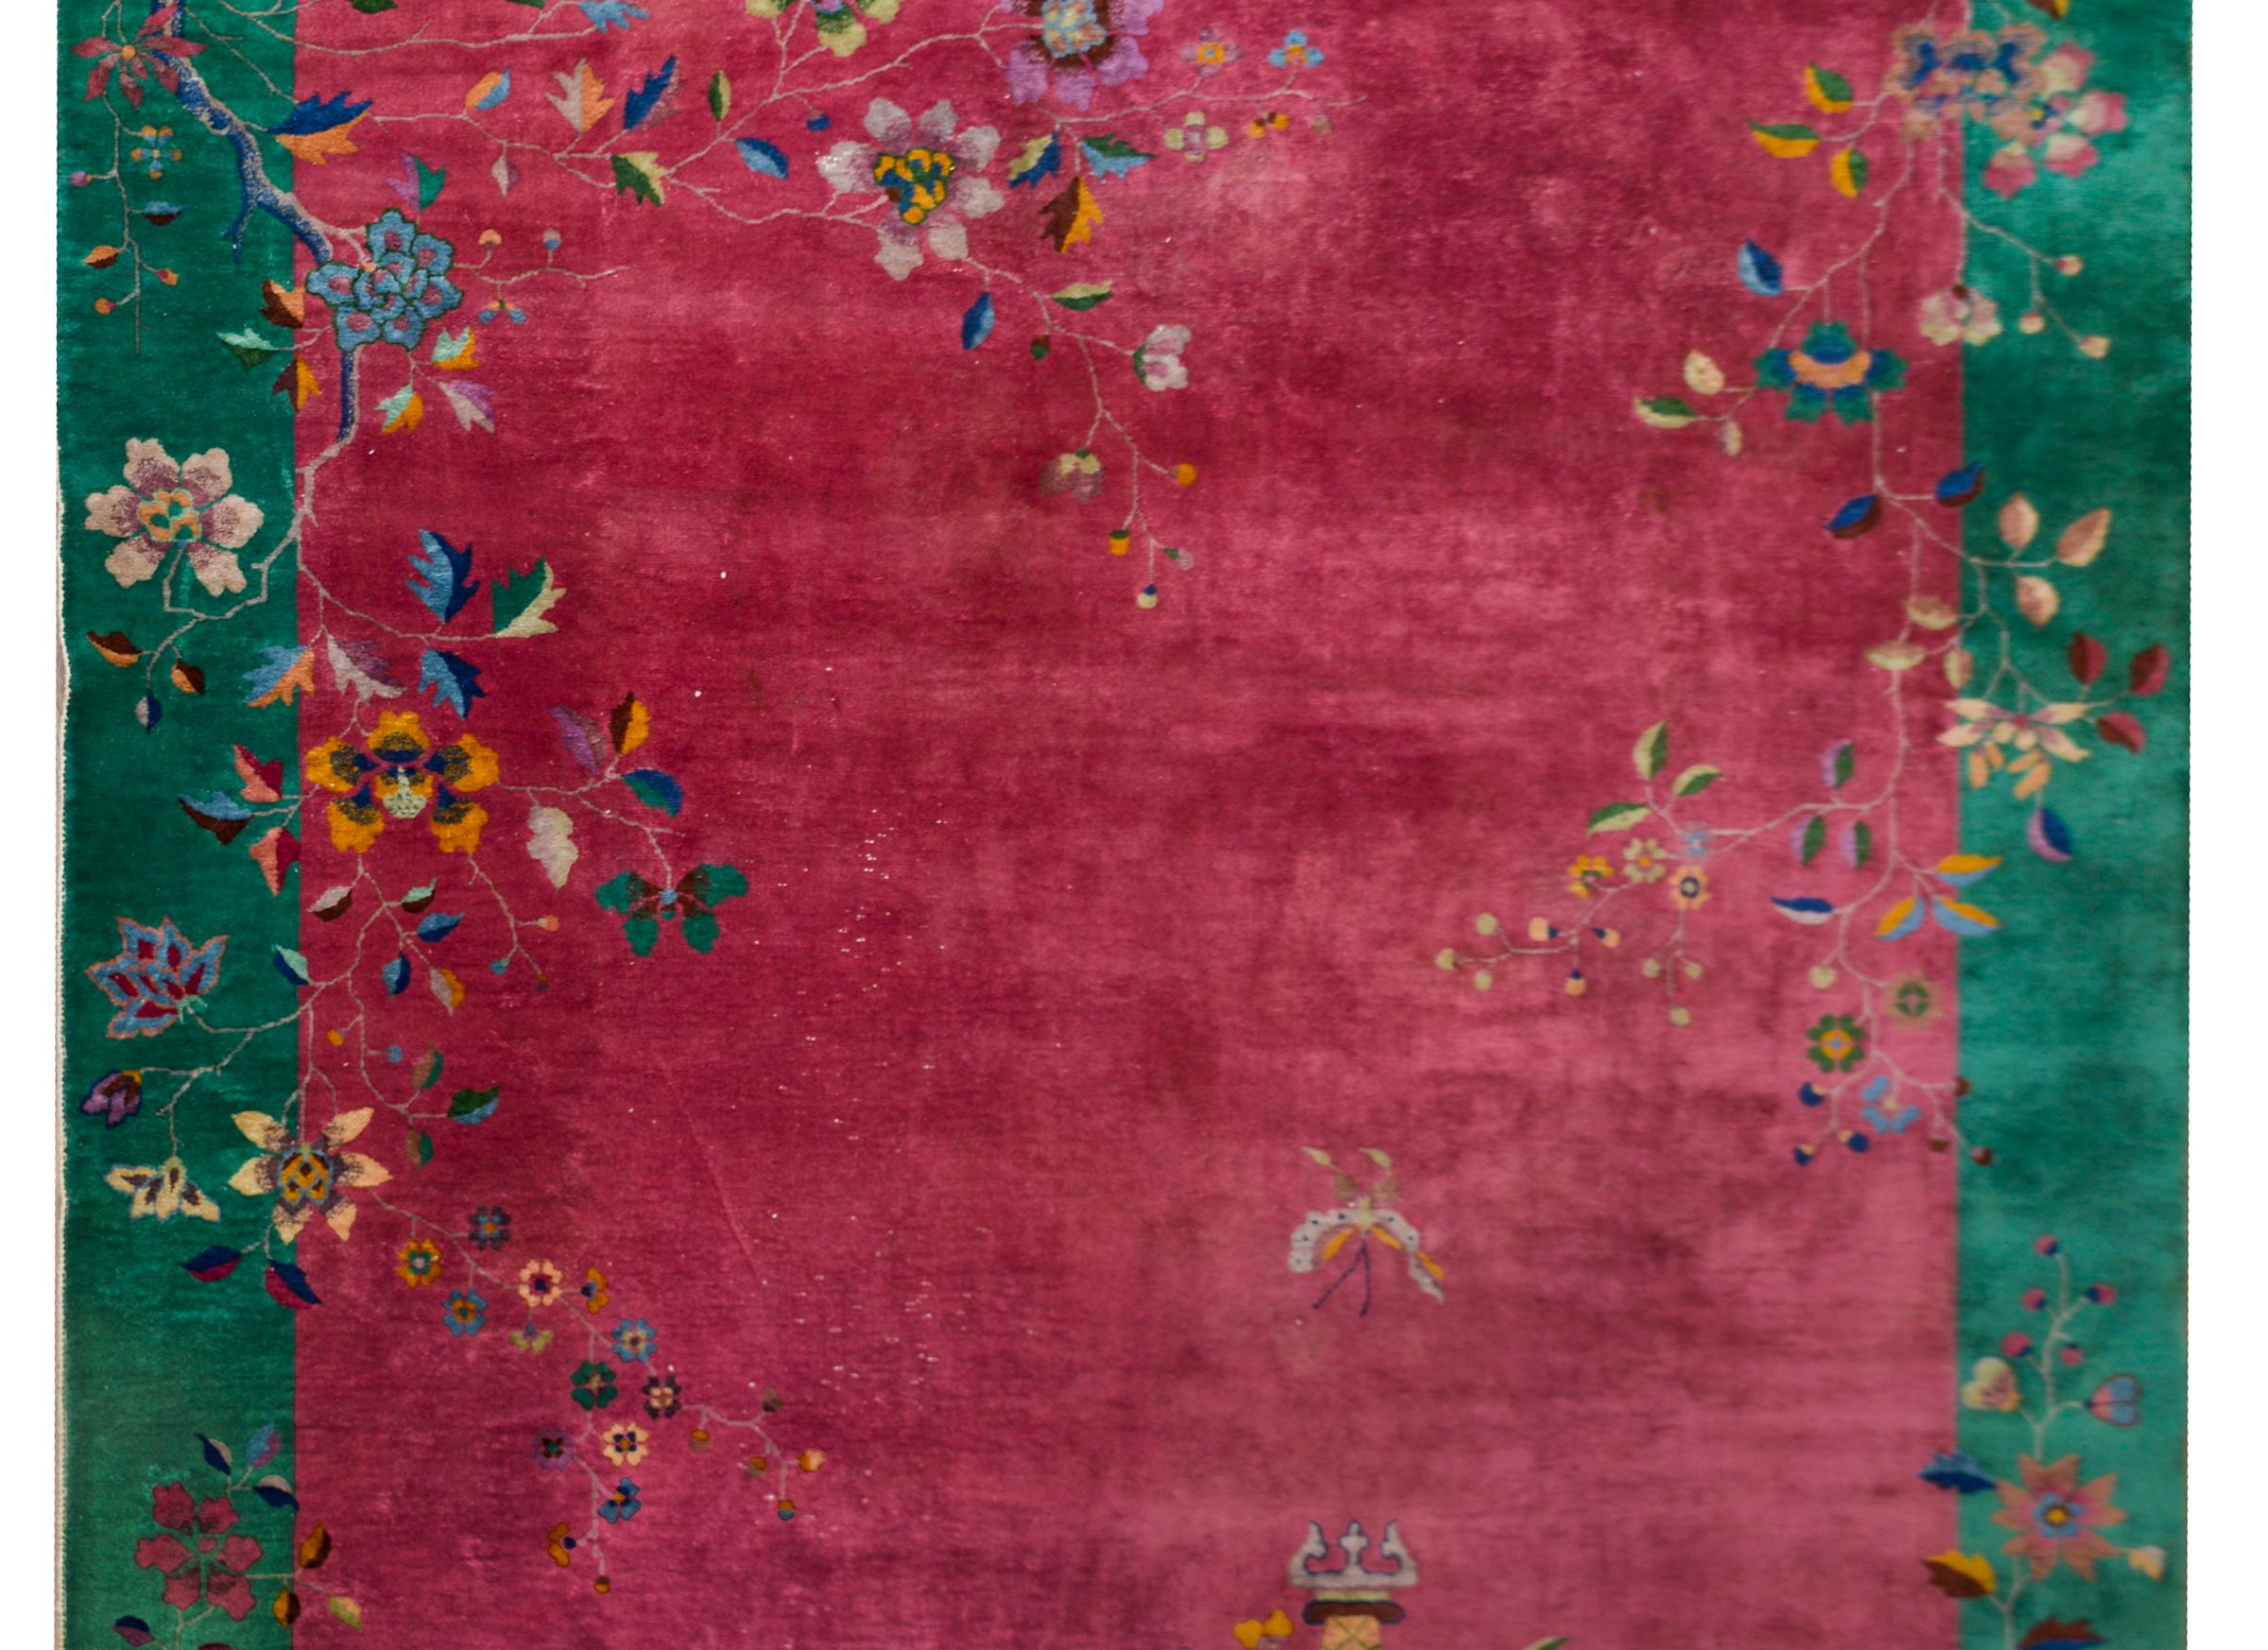 Ein chinesischer Art-Déco-Teppich aus dem frühen 20. Jahrhundert mit einem cranberryfarbenen Feld, das von einer breiten tealfarbenen Bordüre umgeben ist. Mehrfarbige Topfpfingstrosen und Kirschblüten bedecken den Rand, und ein Schmetterling